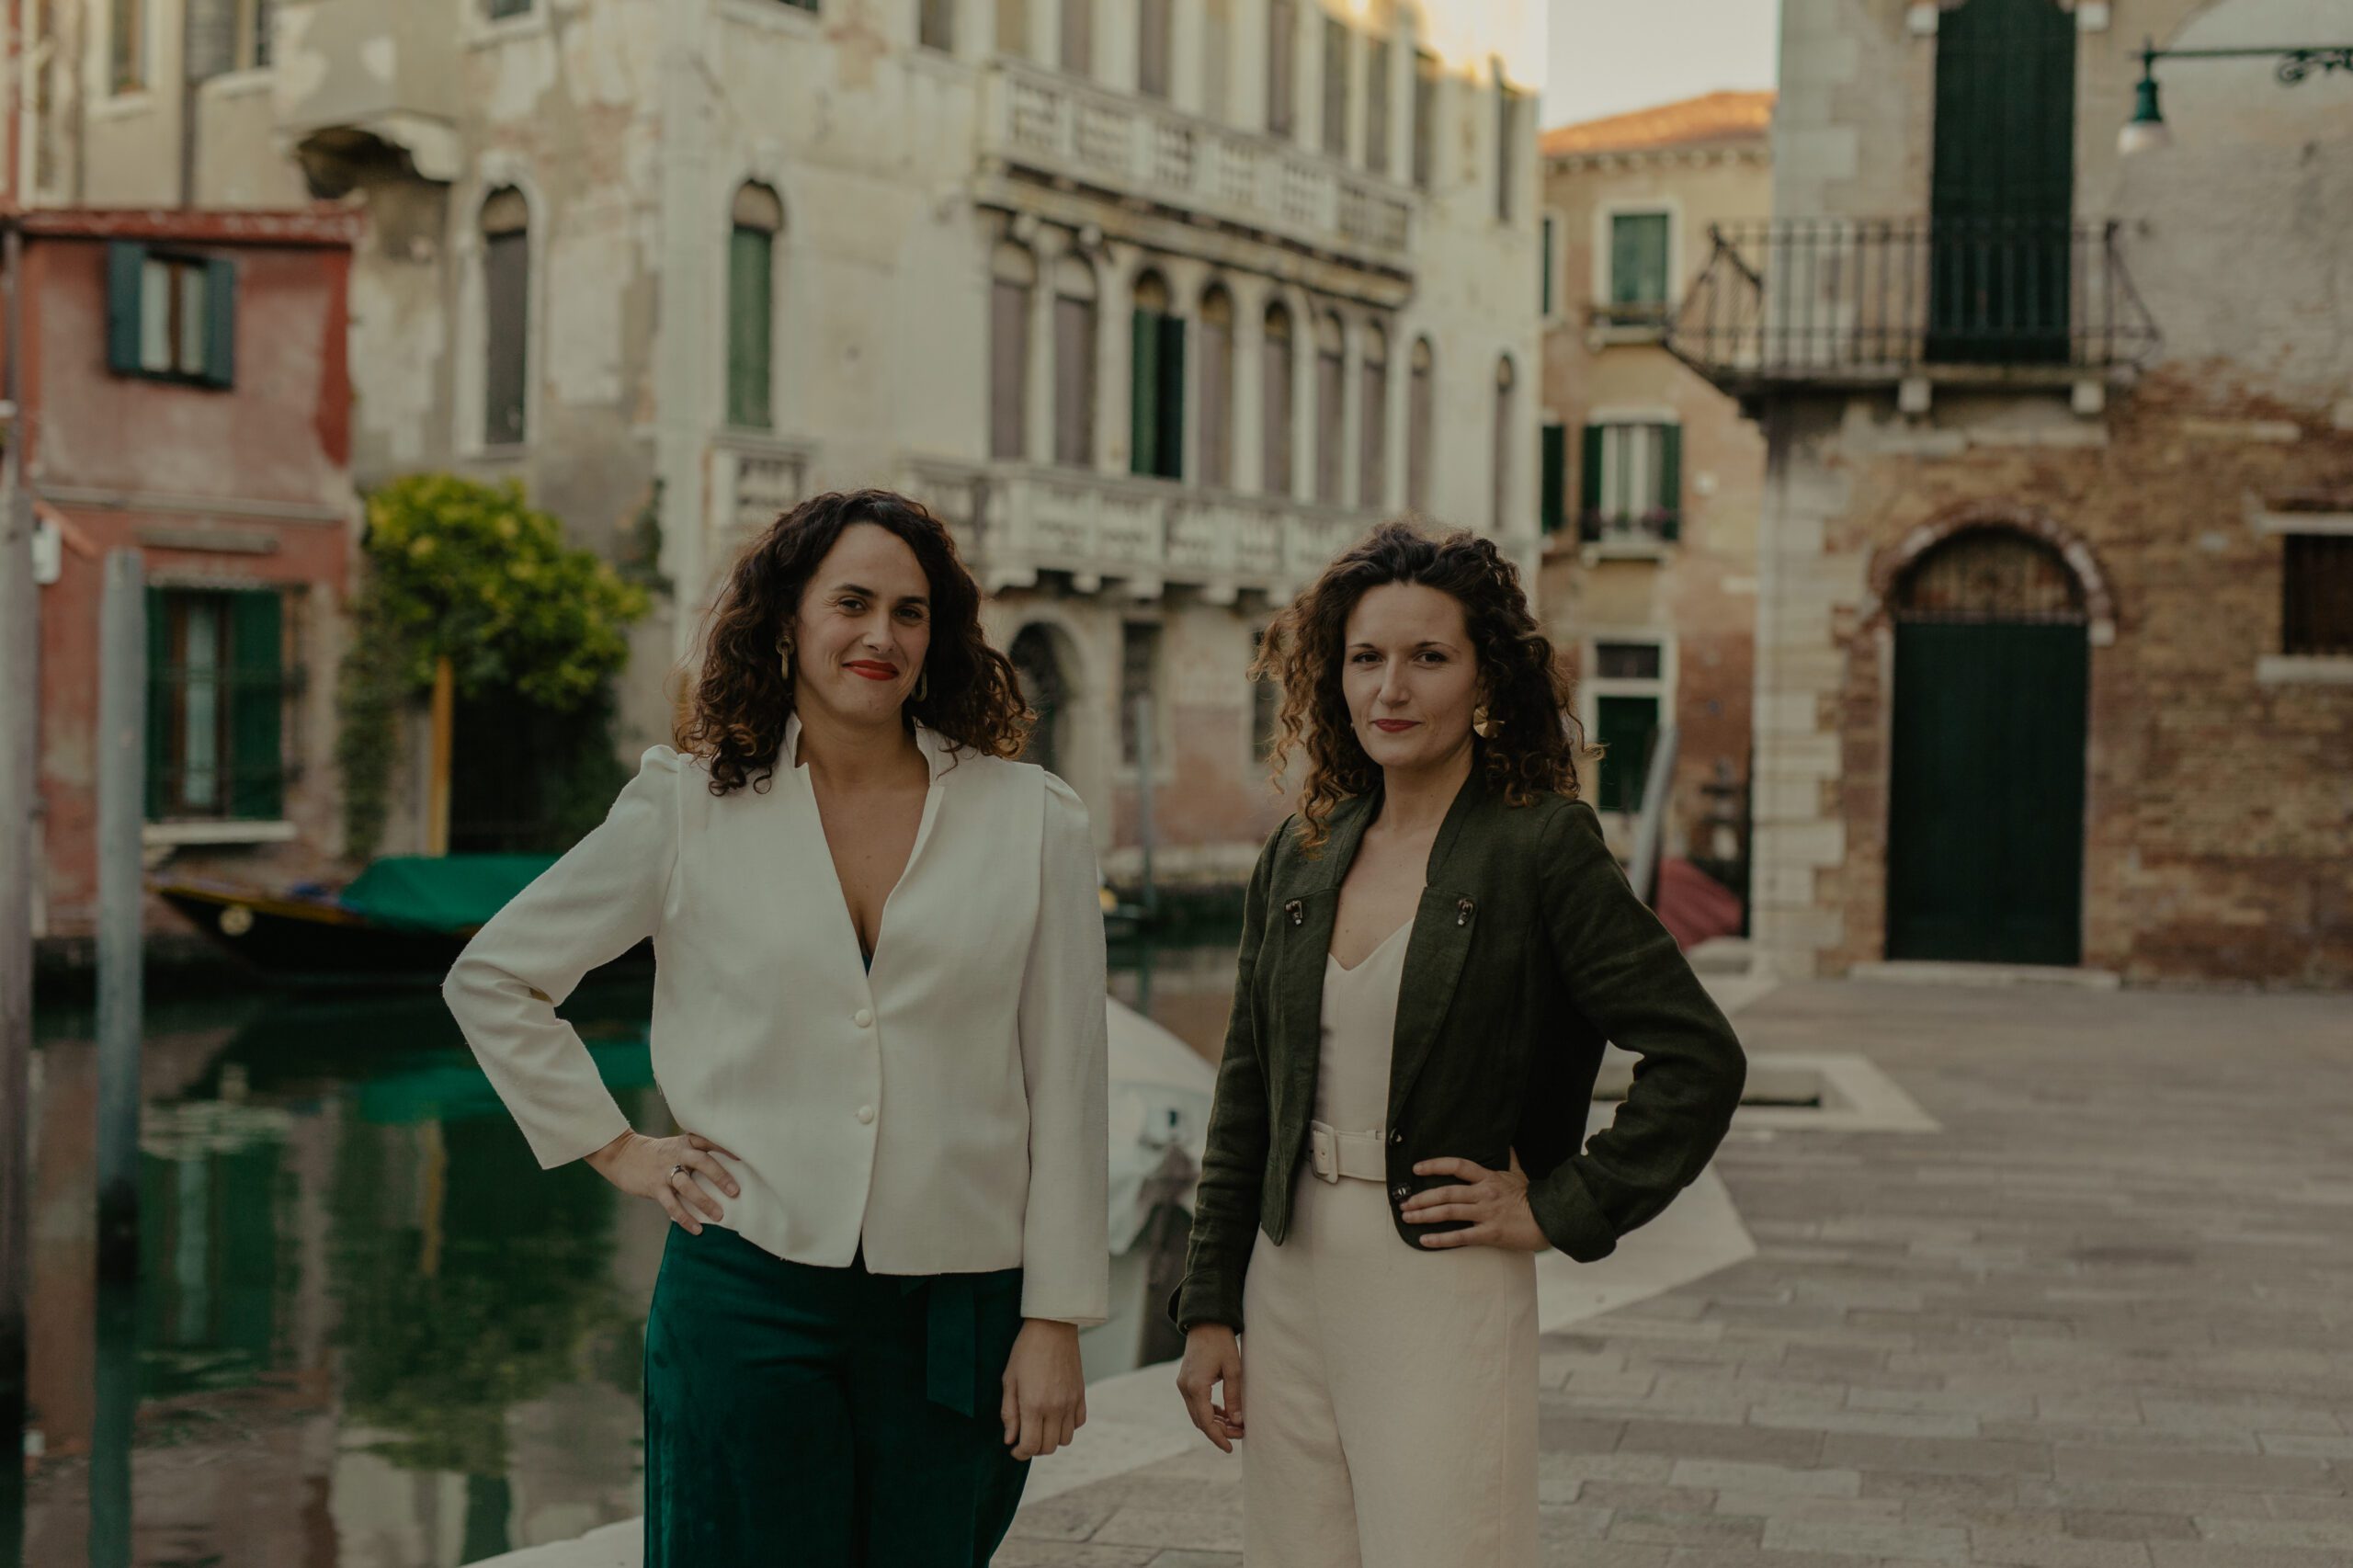 Arte a km 0 per far ripartire Venezia: la scommessa di due ragazze francesi